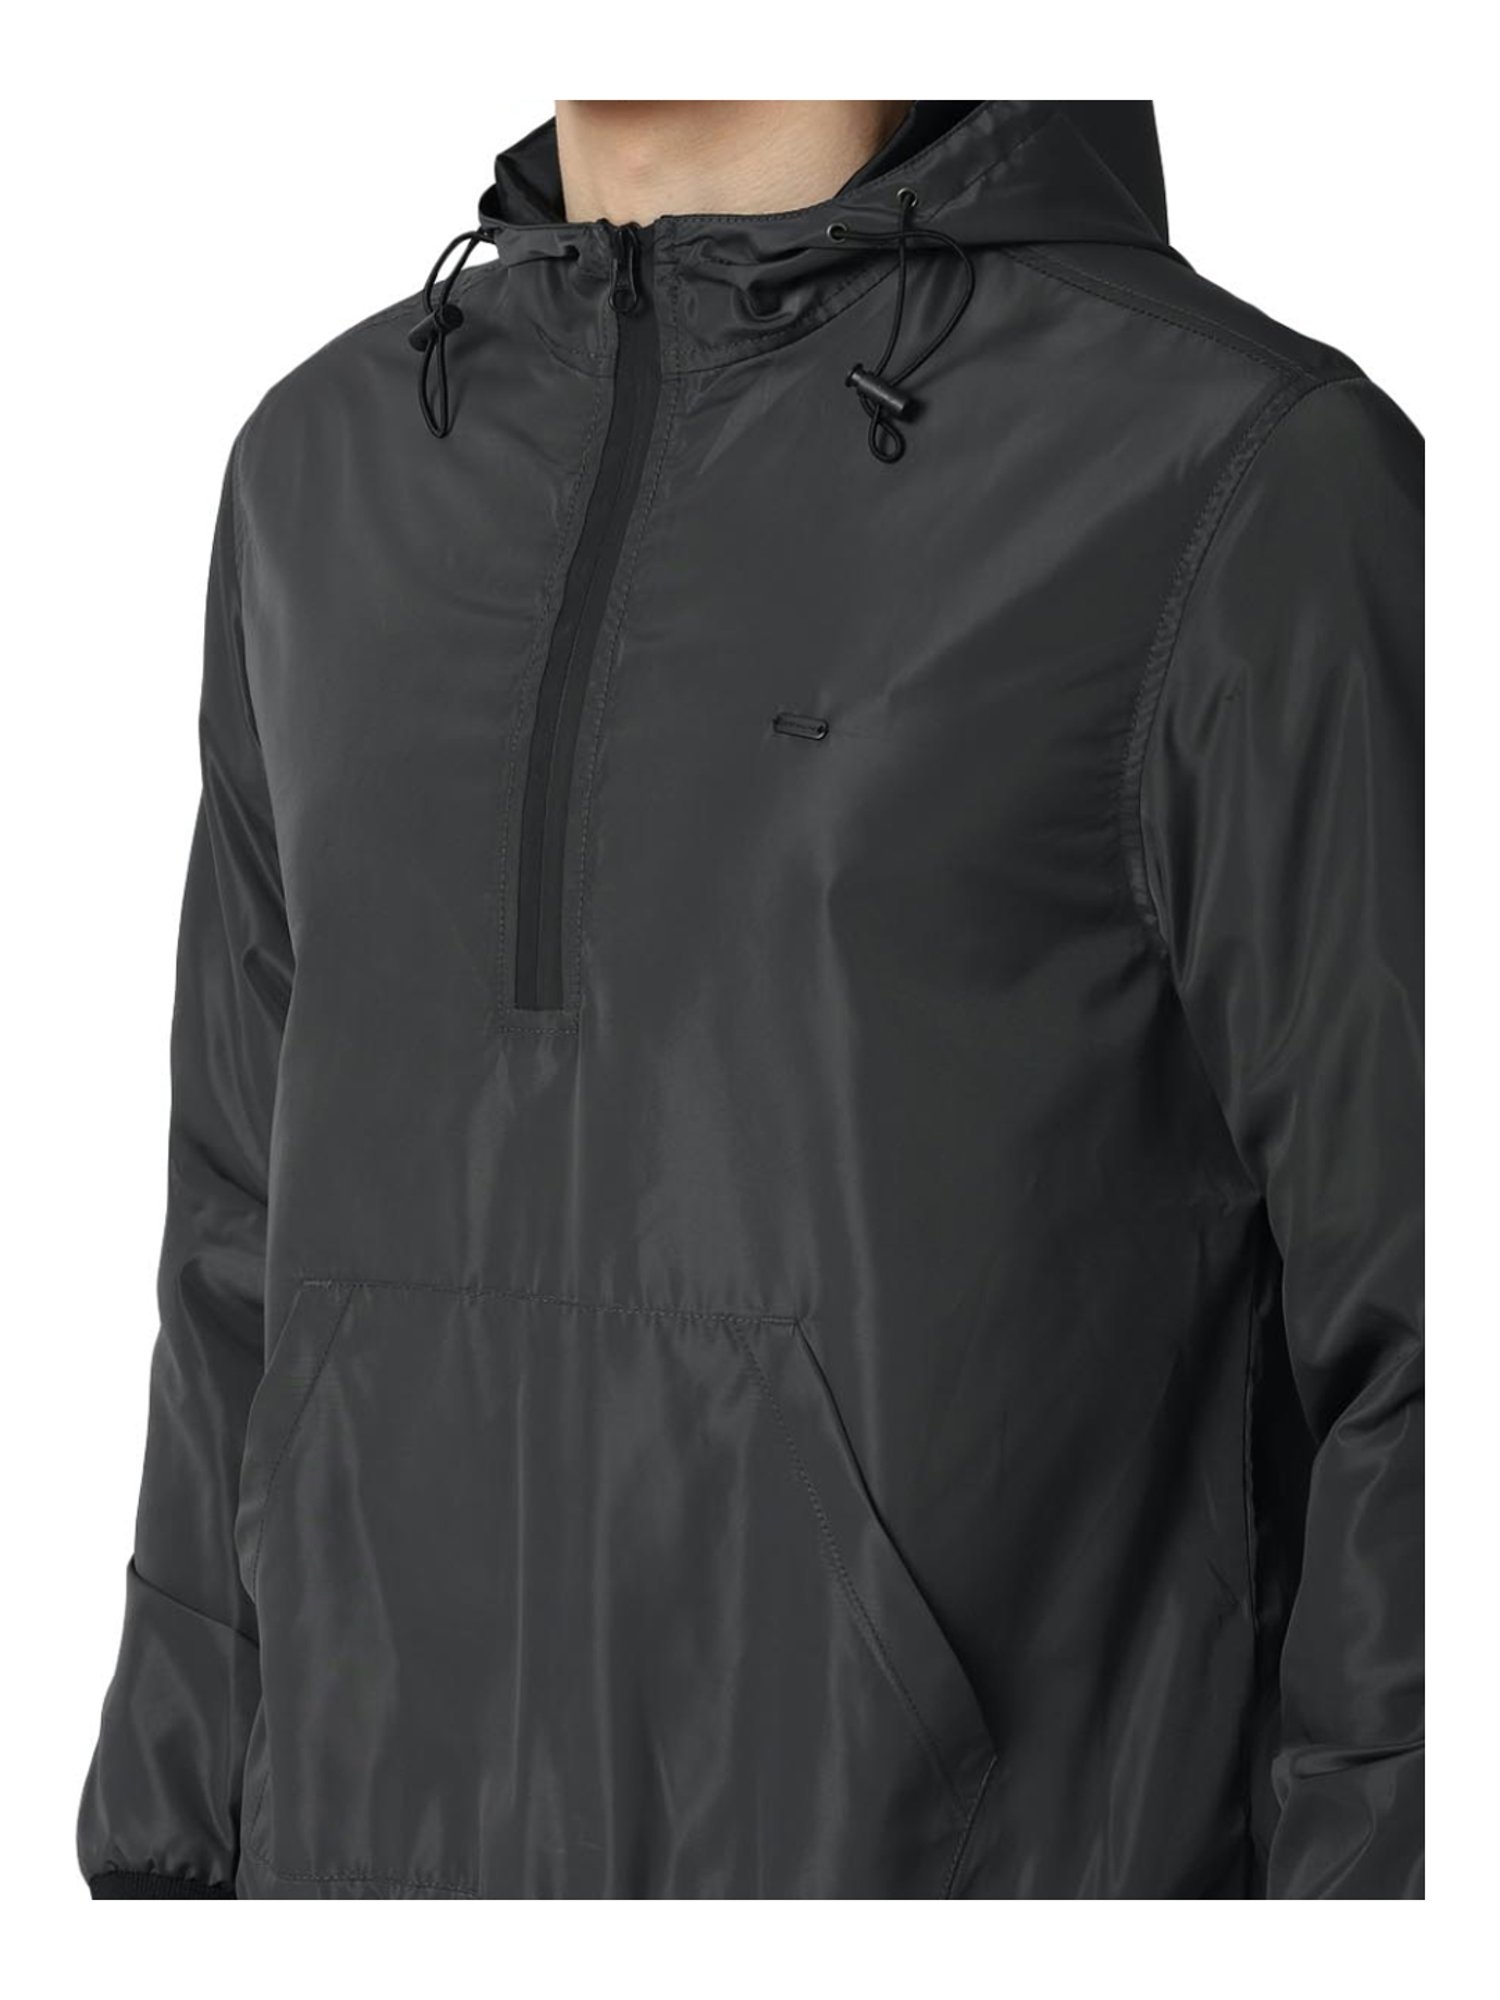 Buy Peter England Men's Parka Coat (PCJKCBOF181085_Multi_S) at Amazon.in